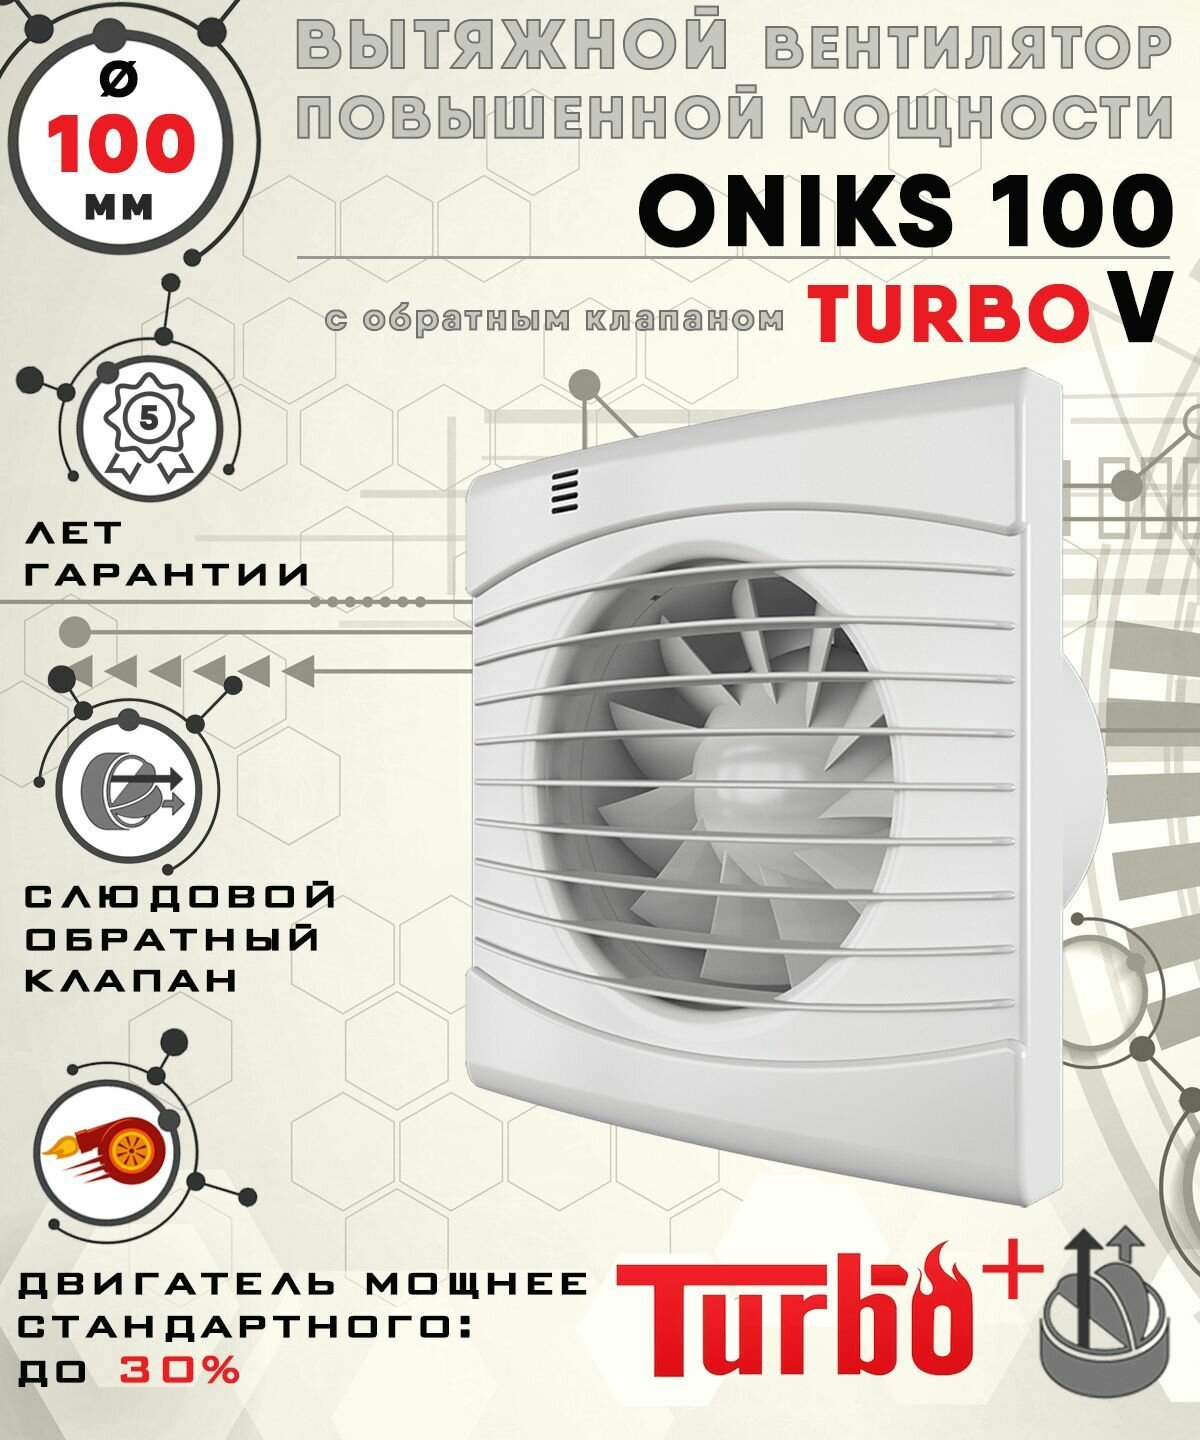 ONIKS 100 TURBO V вентилятор вытяжной 16 Вт повышенной мощности 120 куб. м/ч. с обратным клапаном диаметр 100 мм ZERNBERG